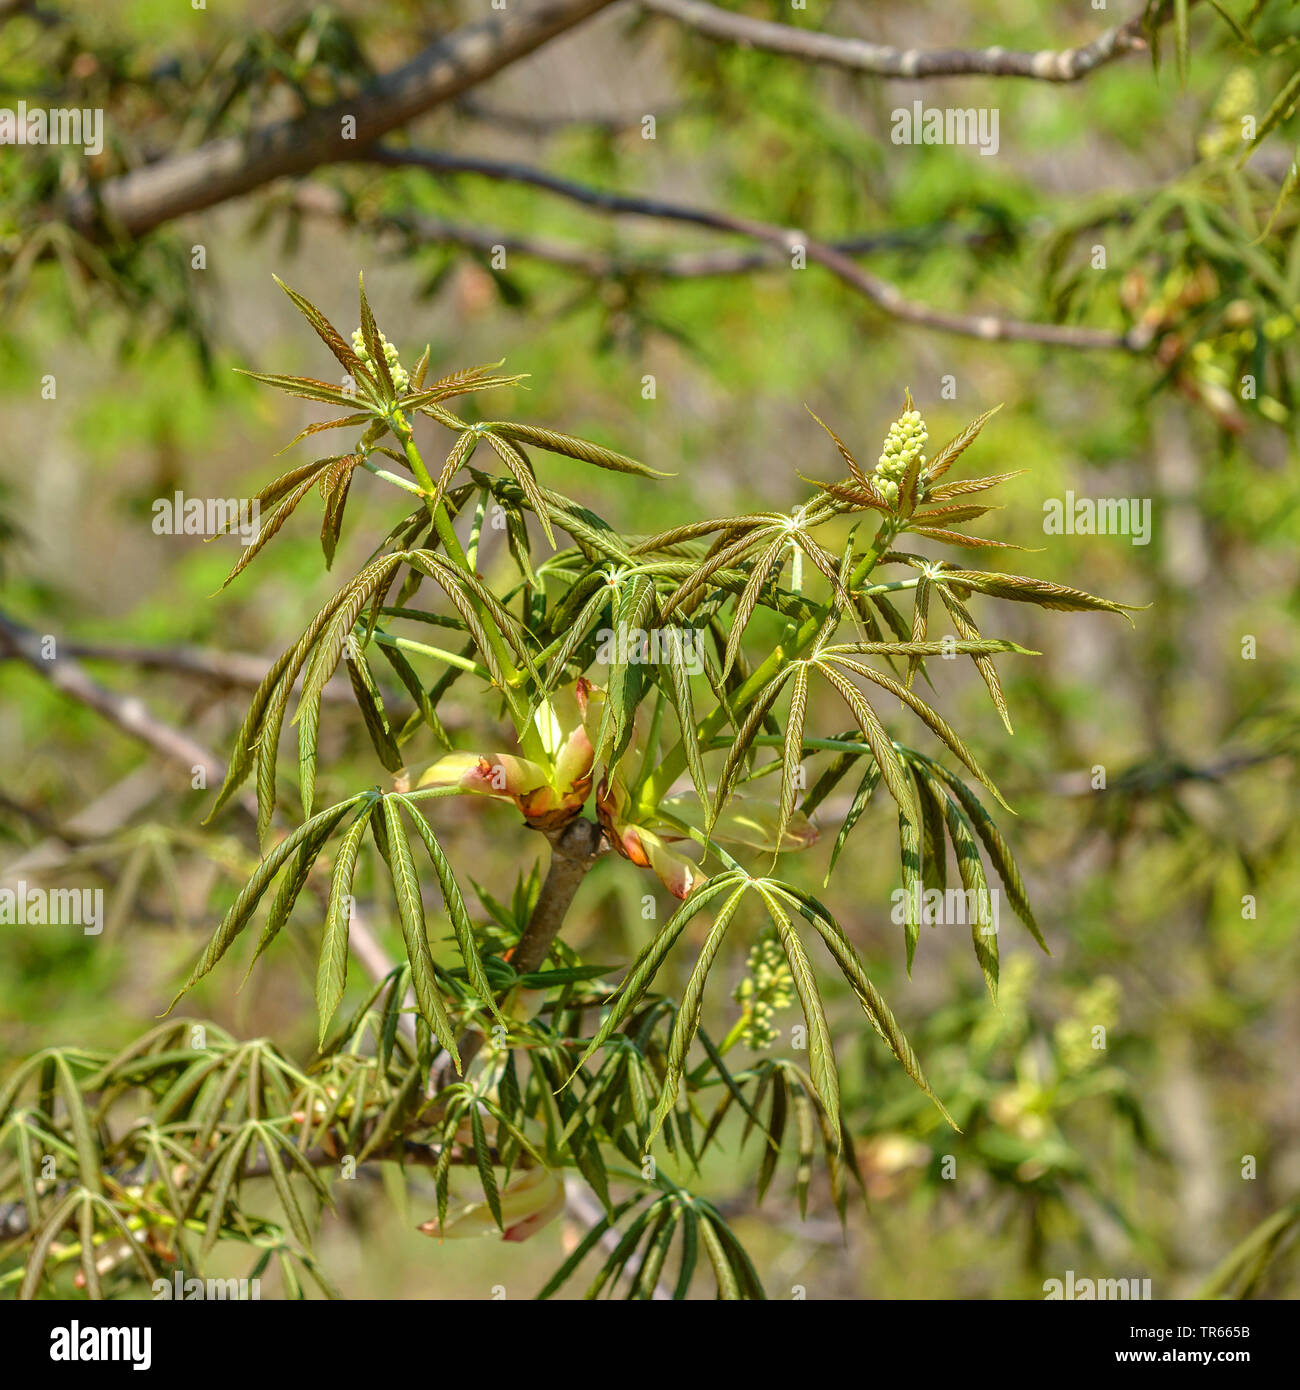 fetid buckeye, Ohio buckeye (Aesculus glabra var glabra), leaf shooting, Germany, Saxony Stock Photo